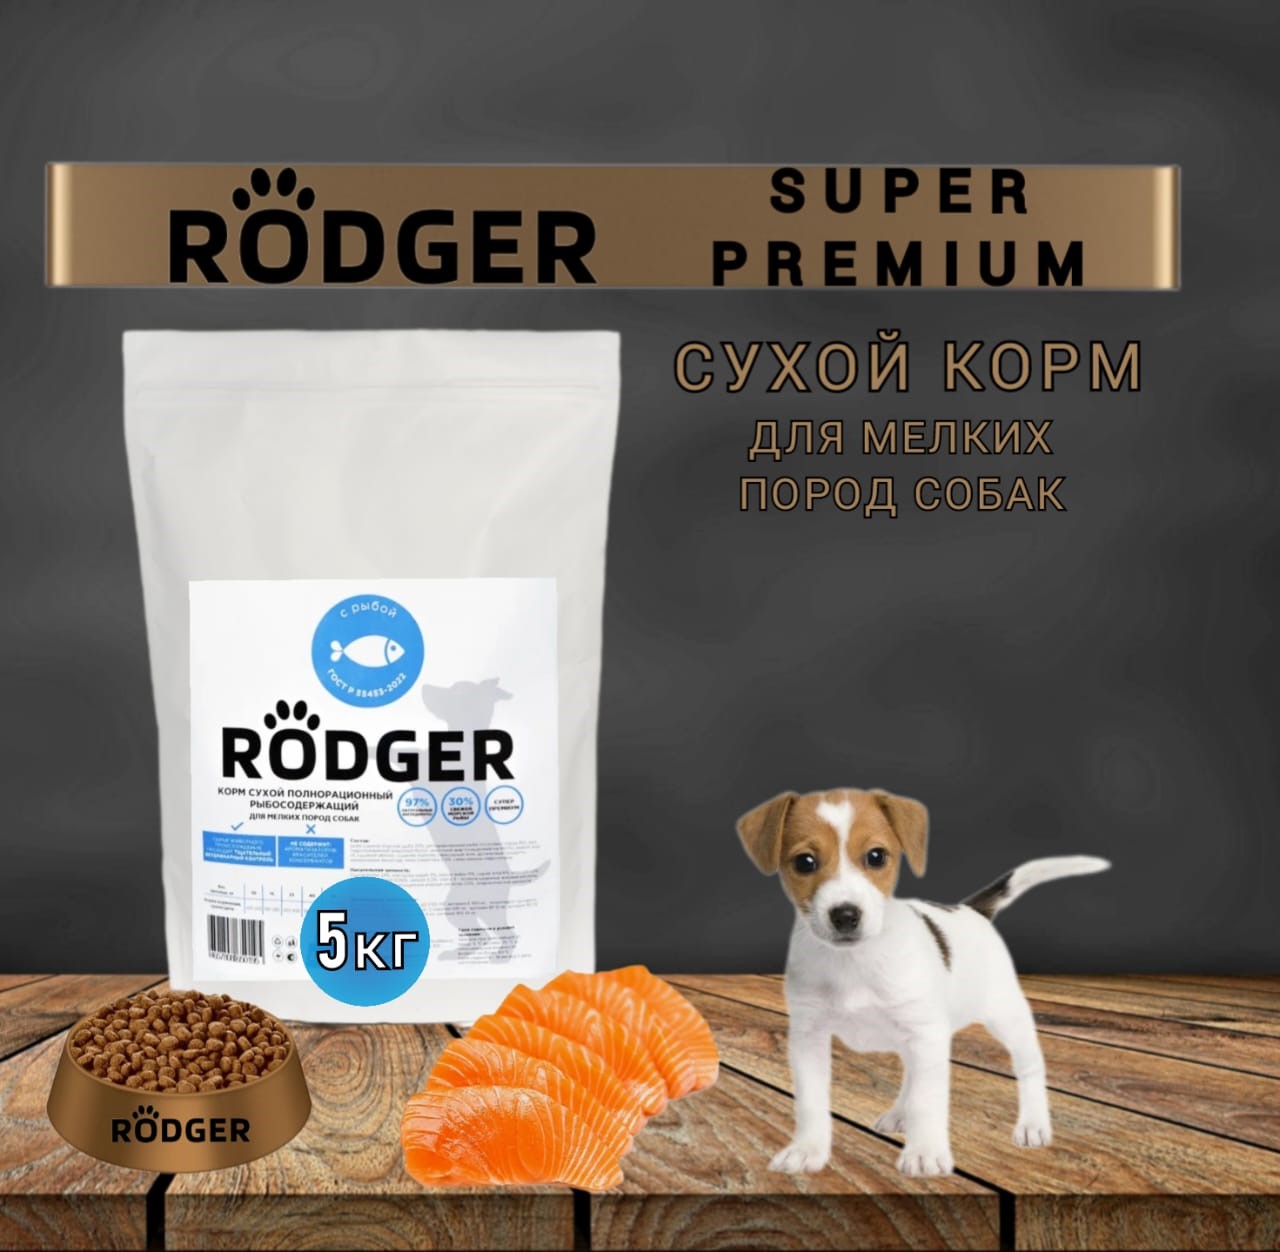 Сухой корм для собак RODGER Super Premium, для мелких пород, рыба, 5 кг